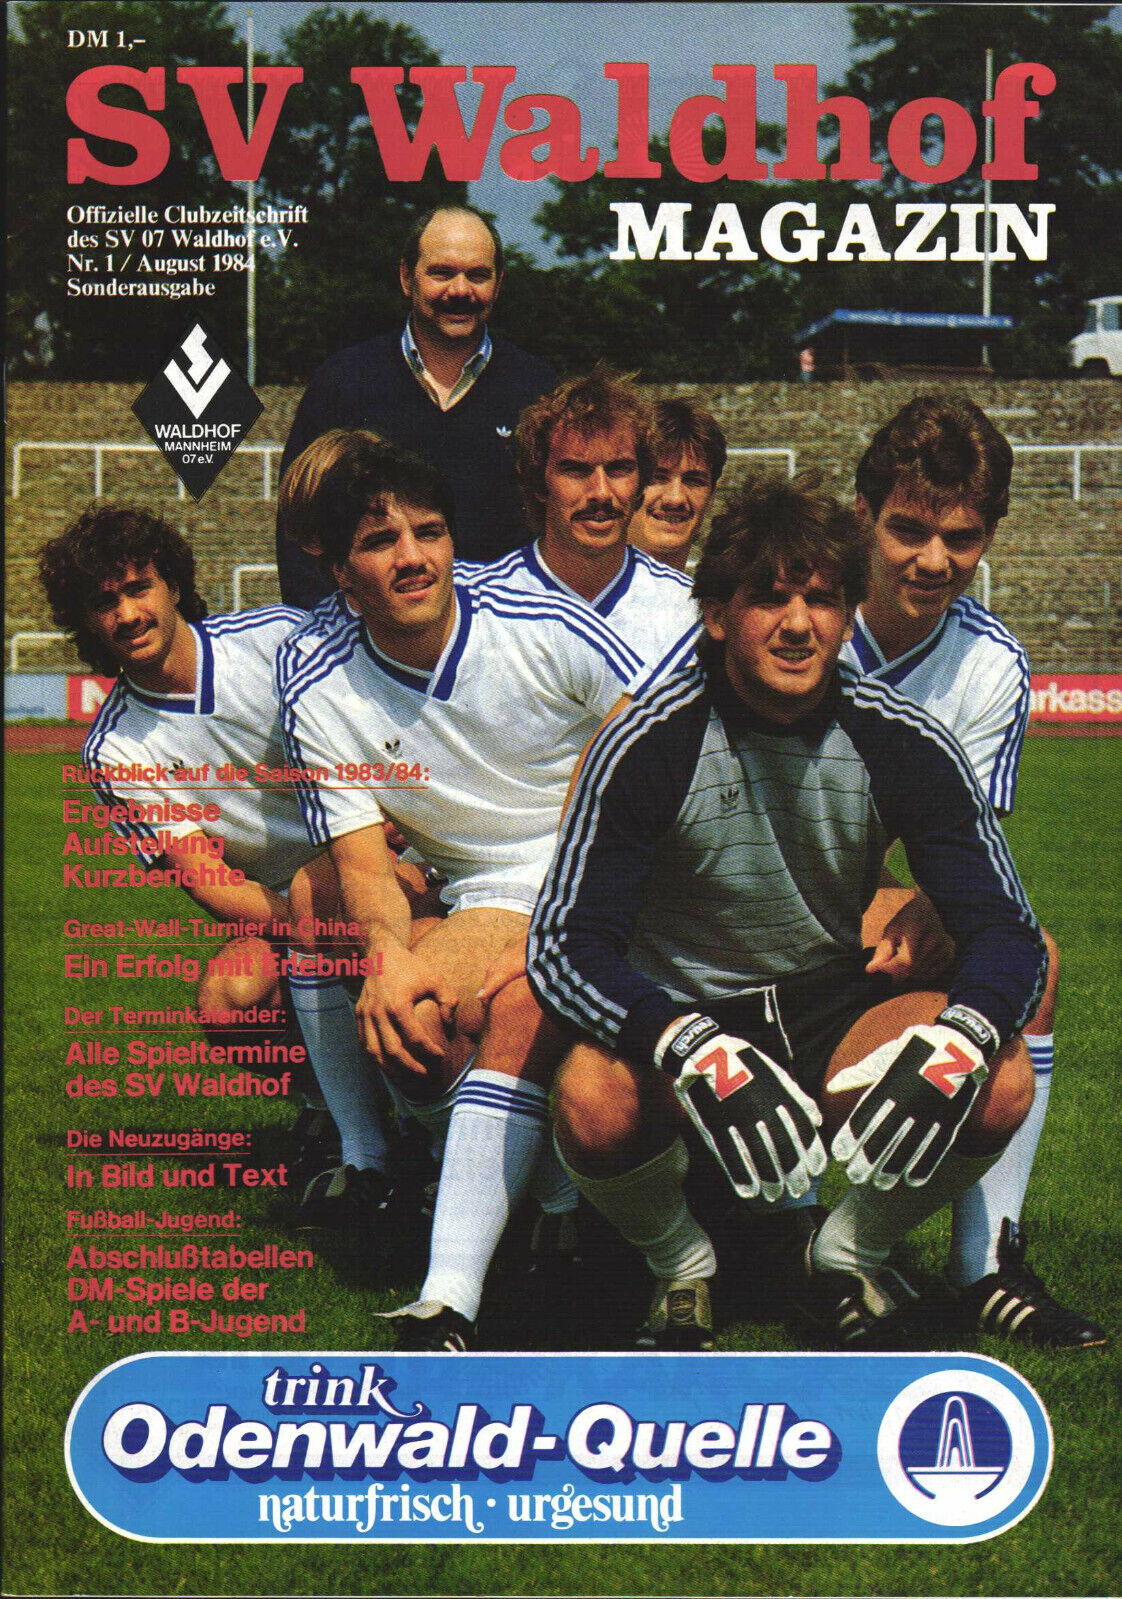 Magazin 2.Spieltag 1984-1985 Waldhof 1. FC Kaiserslautern.jpg